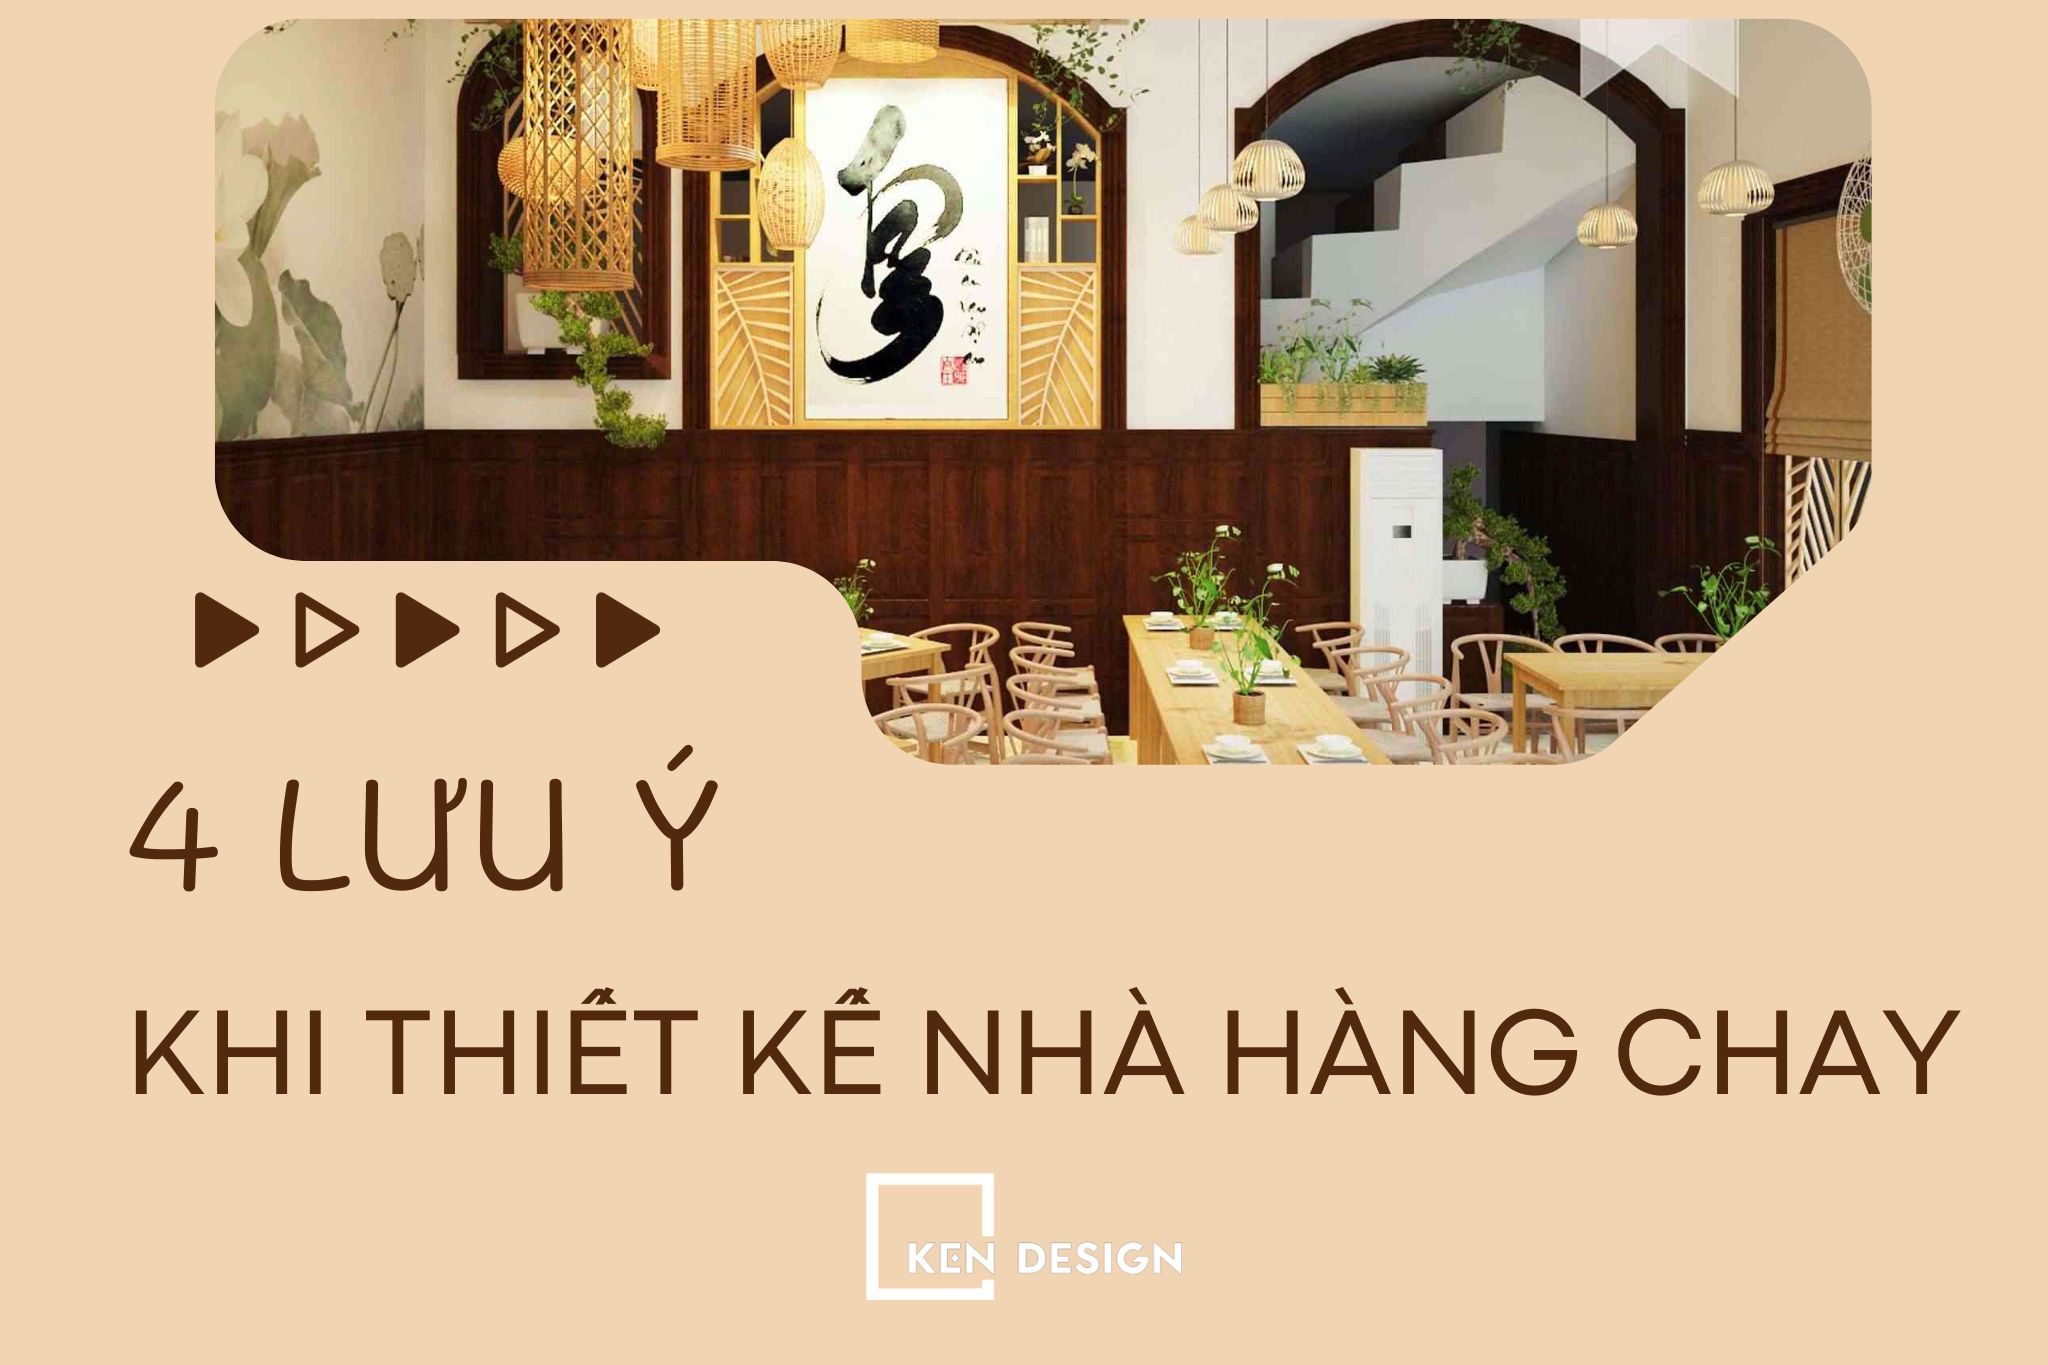 Top 5 Thiết kế nhà hàng chay với không gian đẹp và thu hút khách hàng